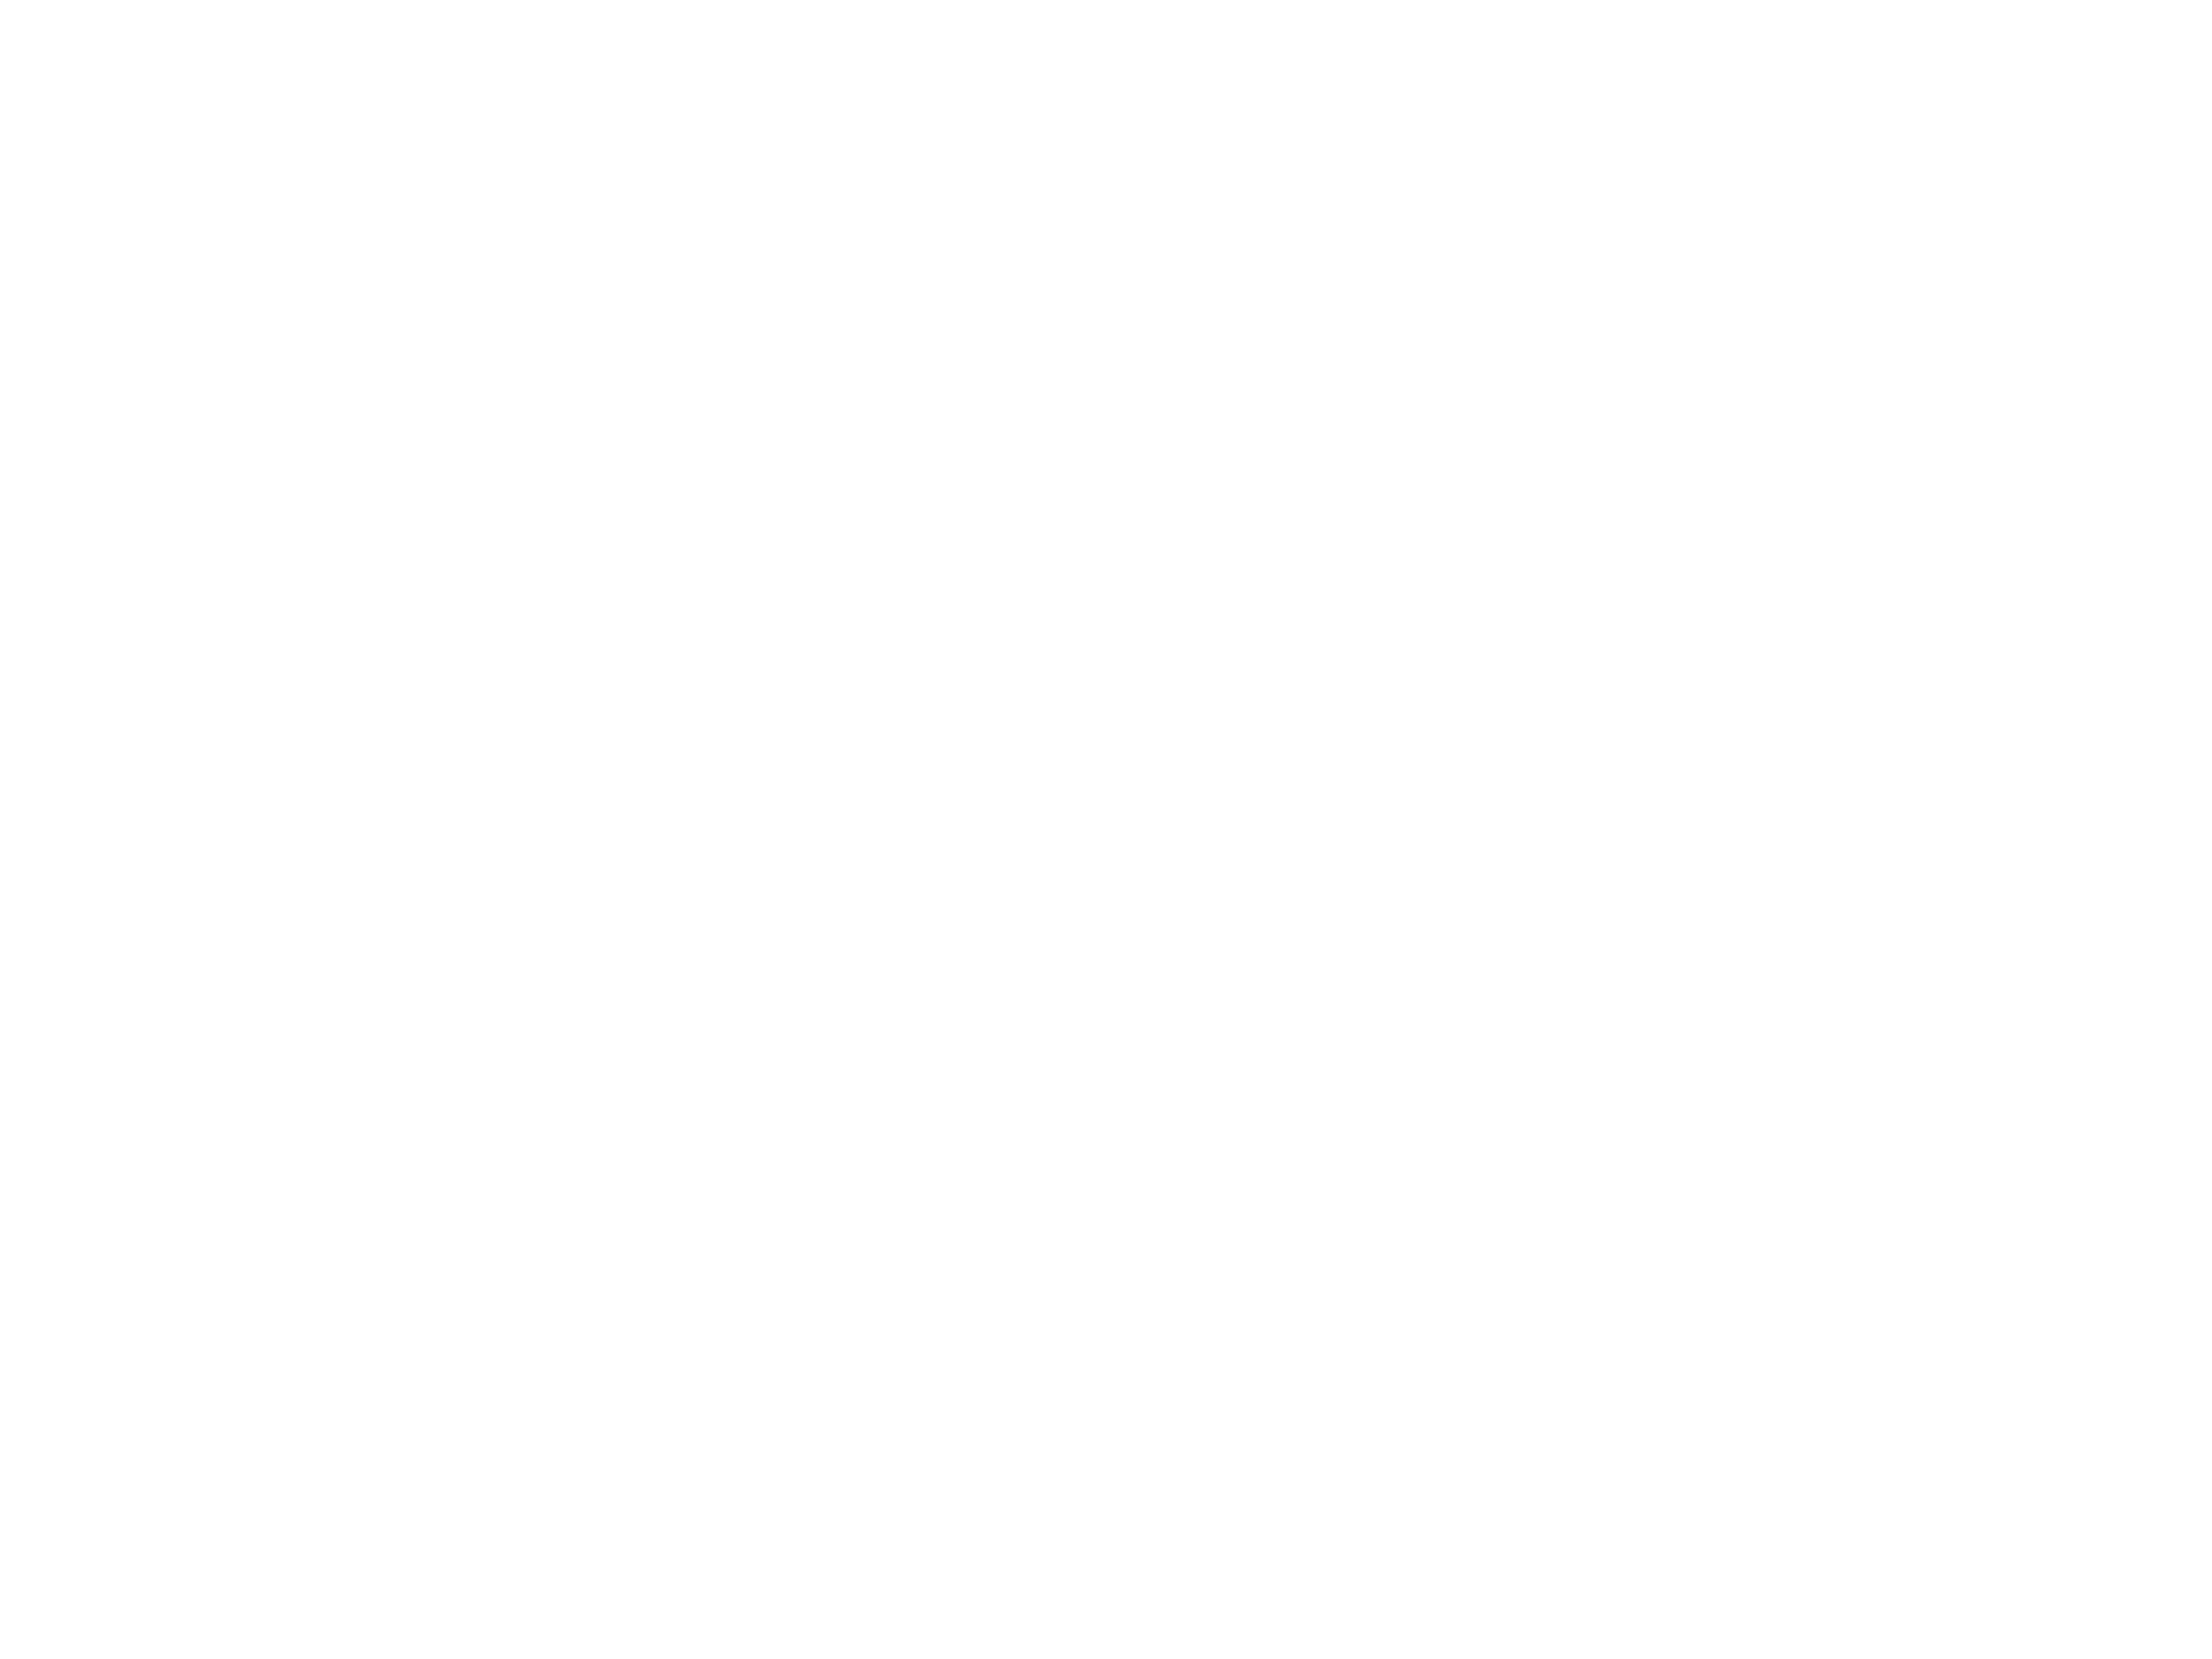 Royal Fools